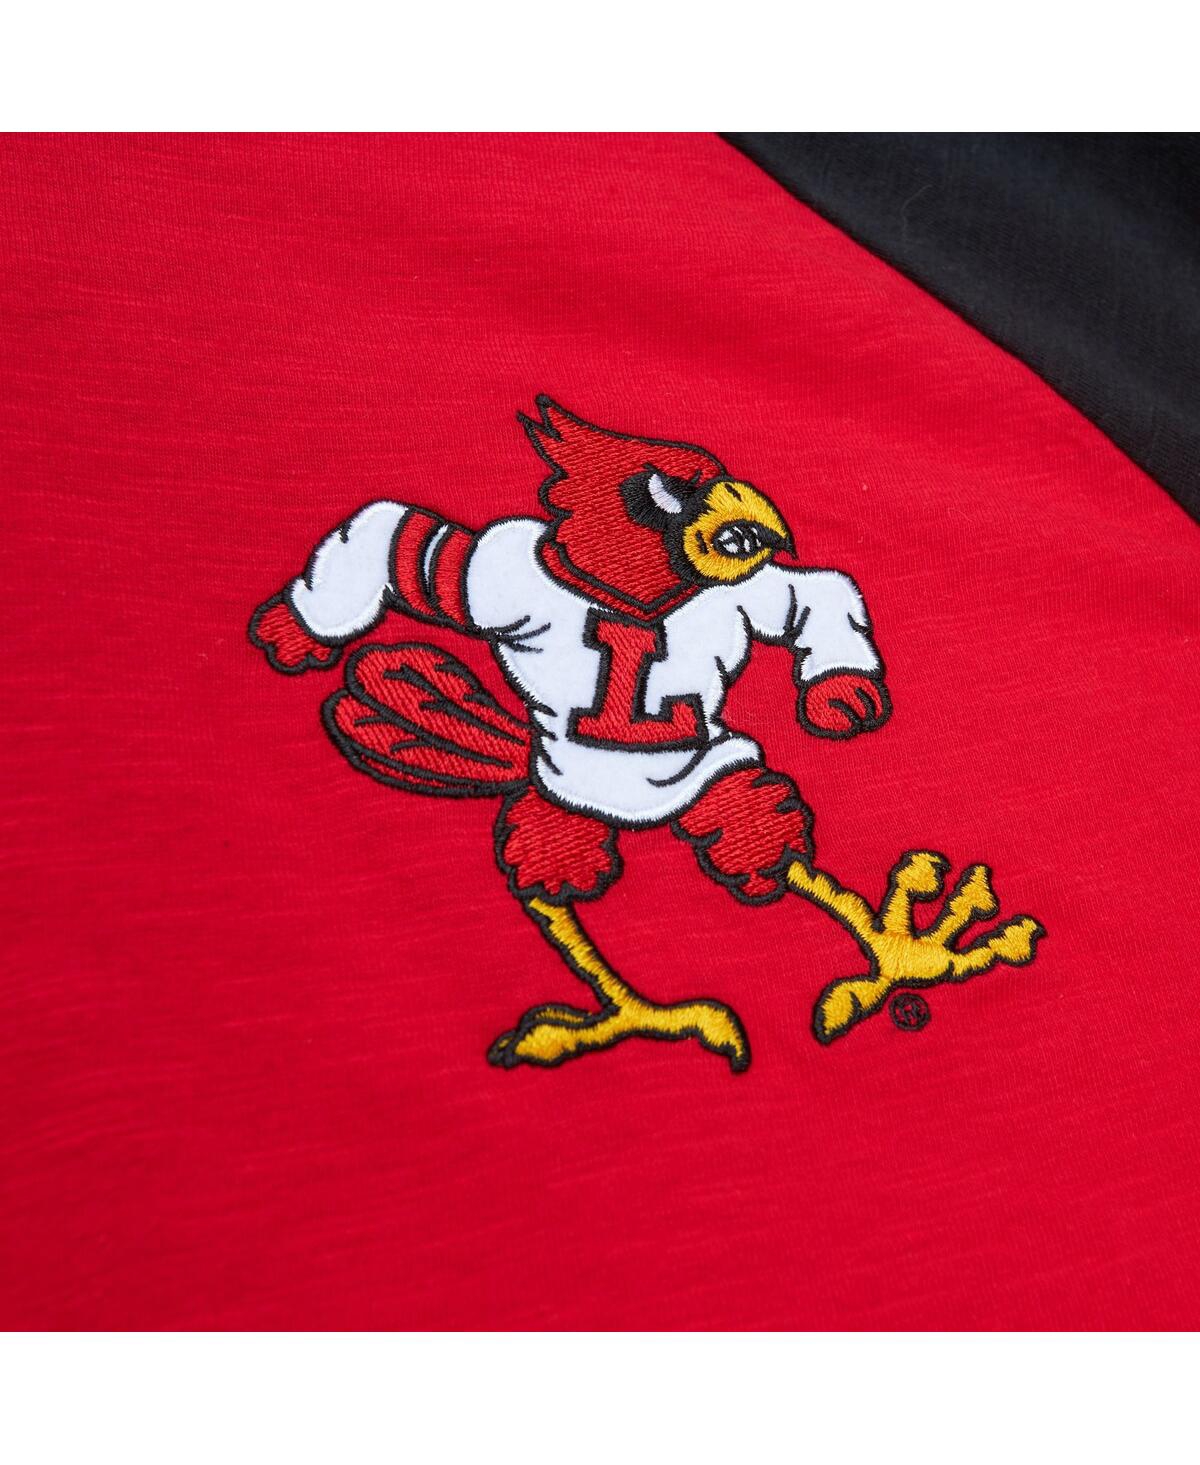 Shop Mitchell & Ness Men's  Red Louisville Cardinals Legendary Slub Raglan Long Sleeve T-shirt